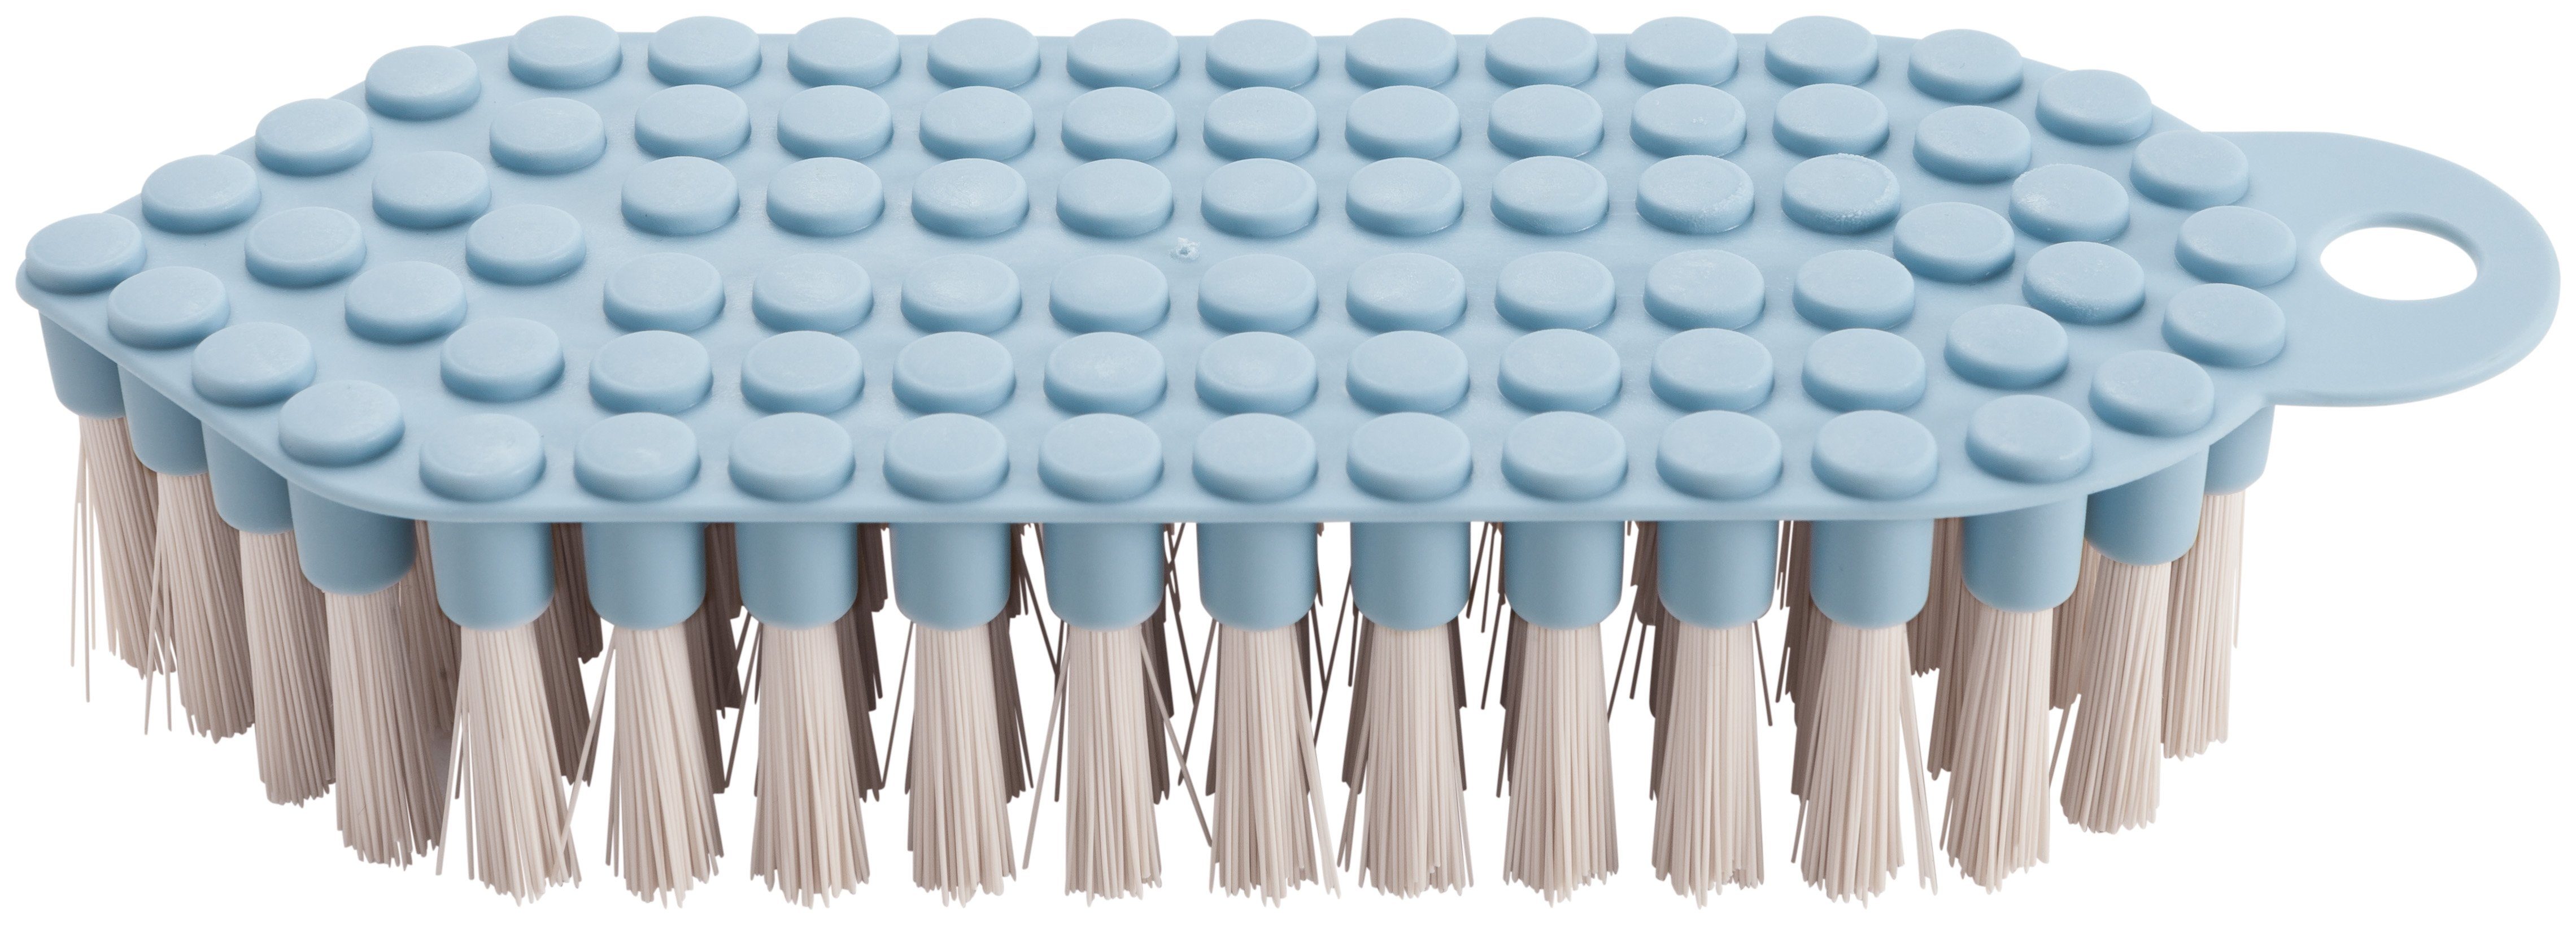 haug bürsten Reinigungsbürste 60378, flexible Scheuerbürste mit harten Borsten, soft blau, mit Rundungen und Kanten, aus PP – Made in Germany